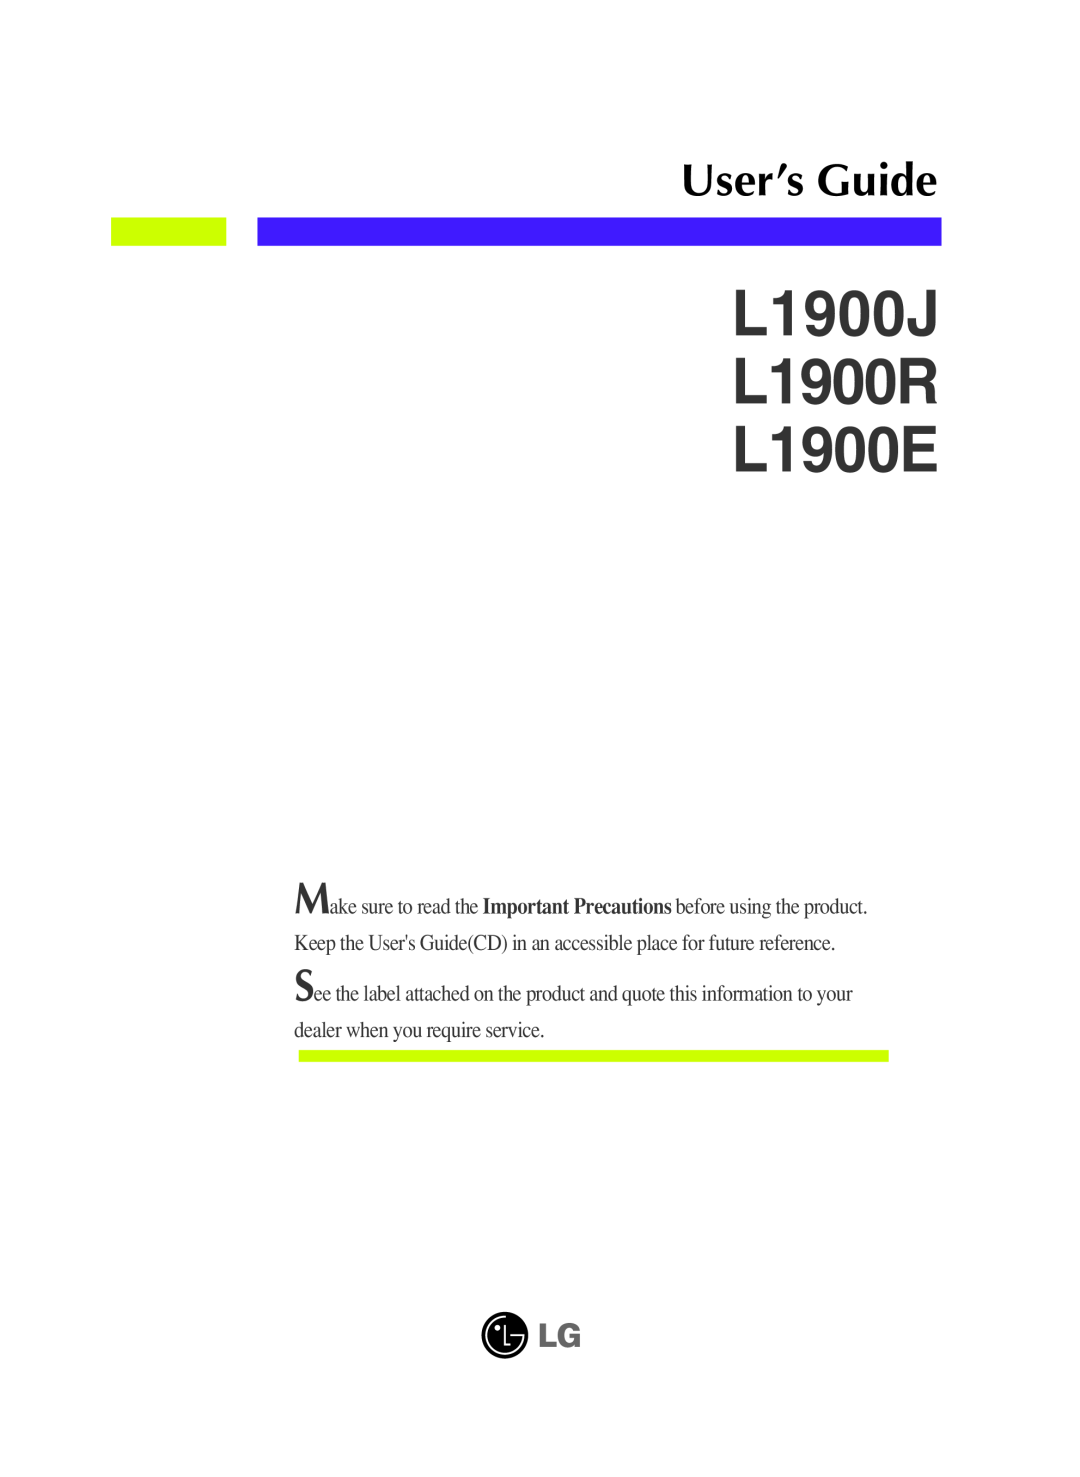 LG Electronics manual L1900J L1900R L1900E, User’s Guide 